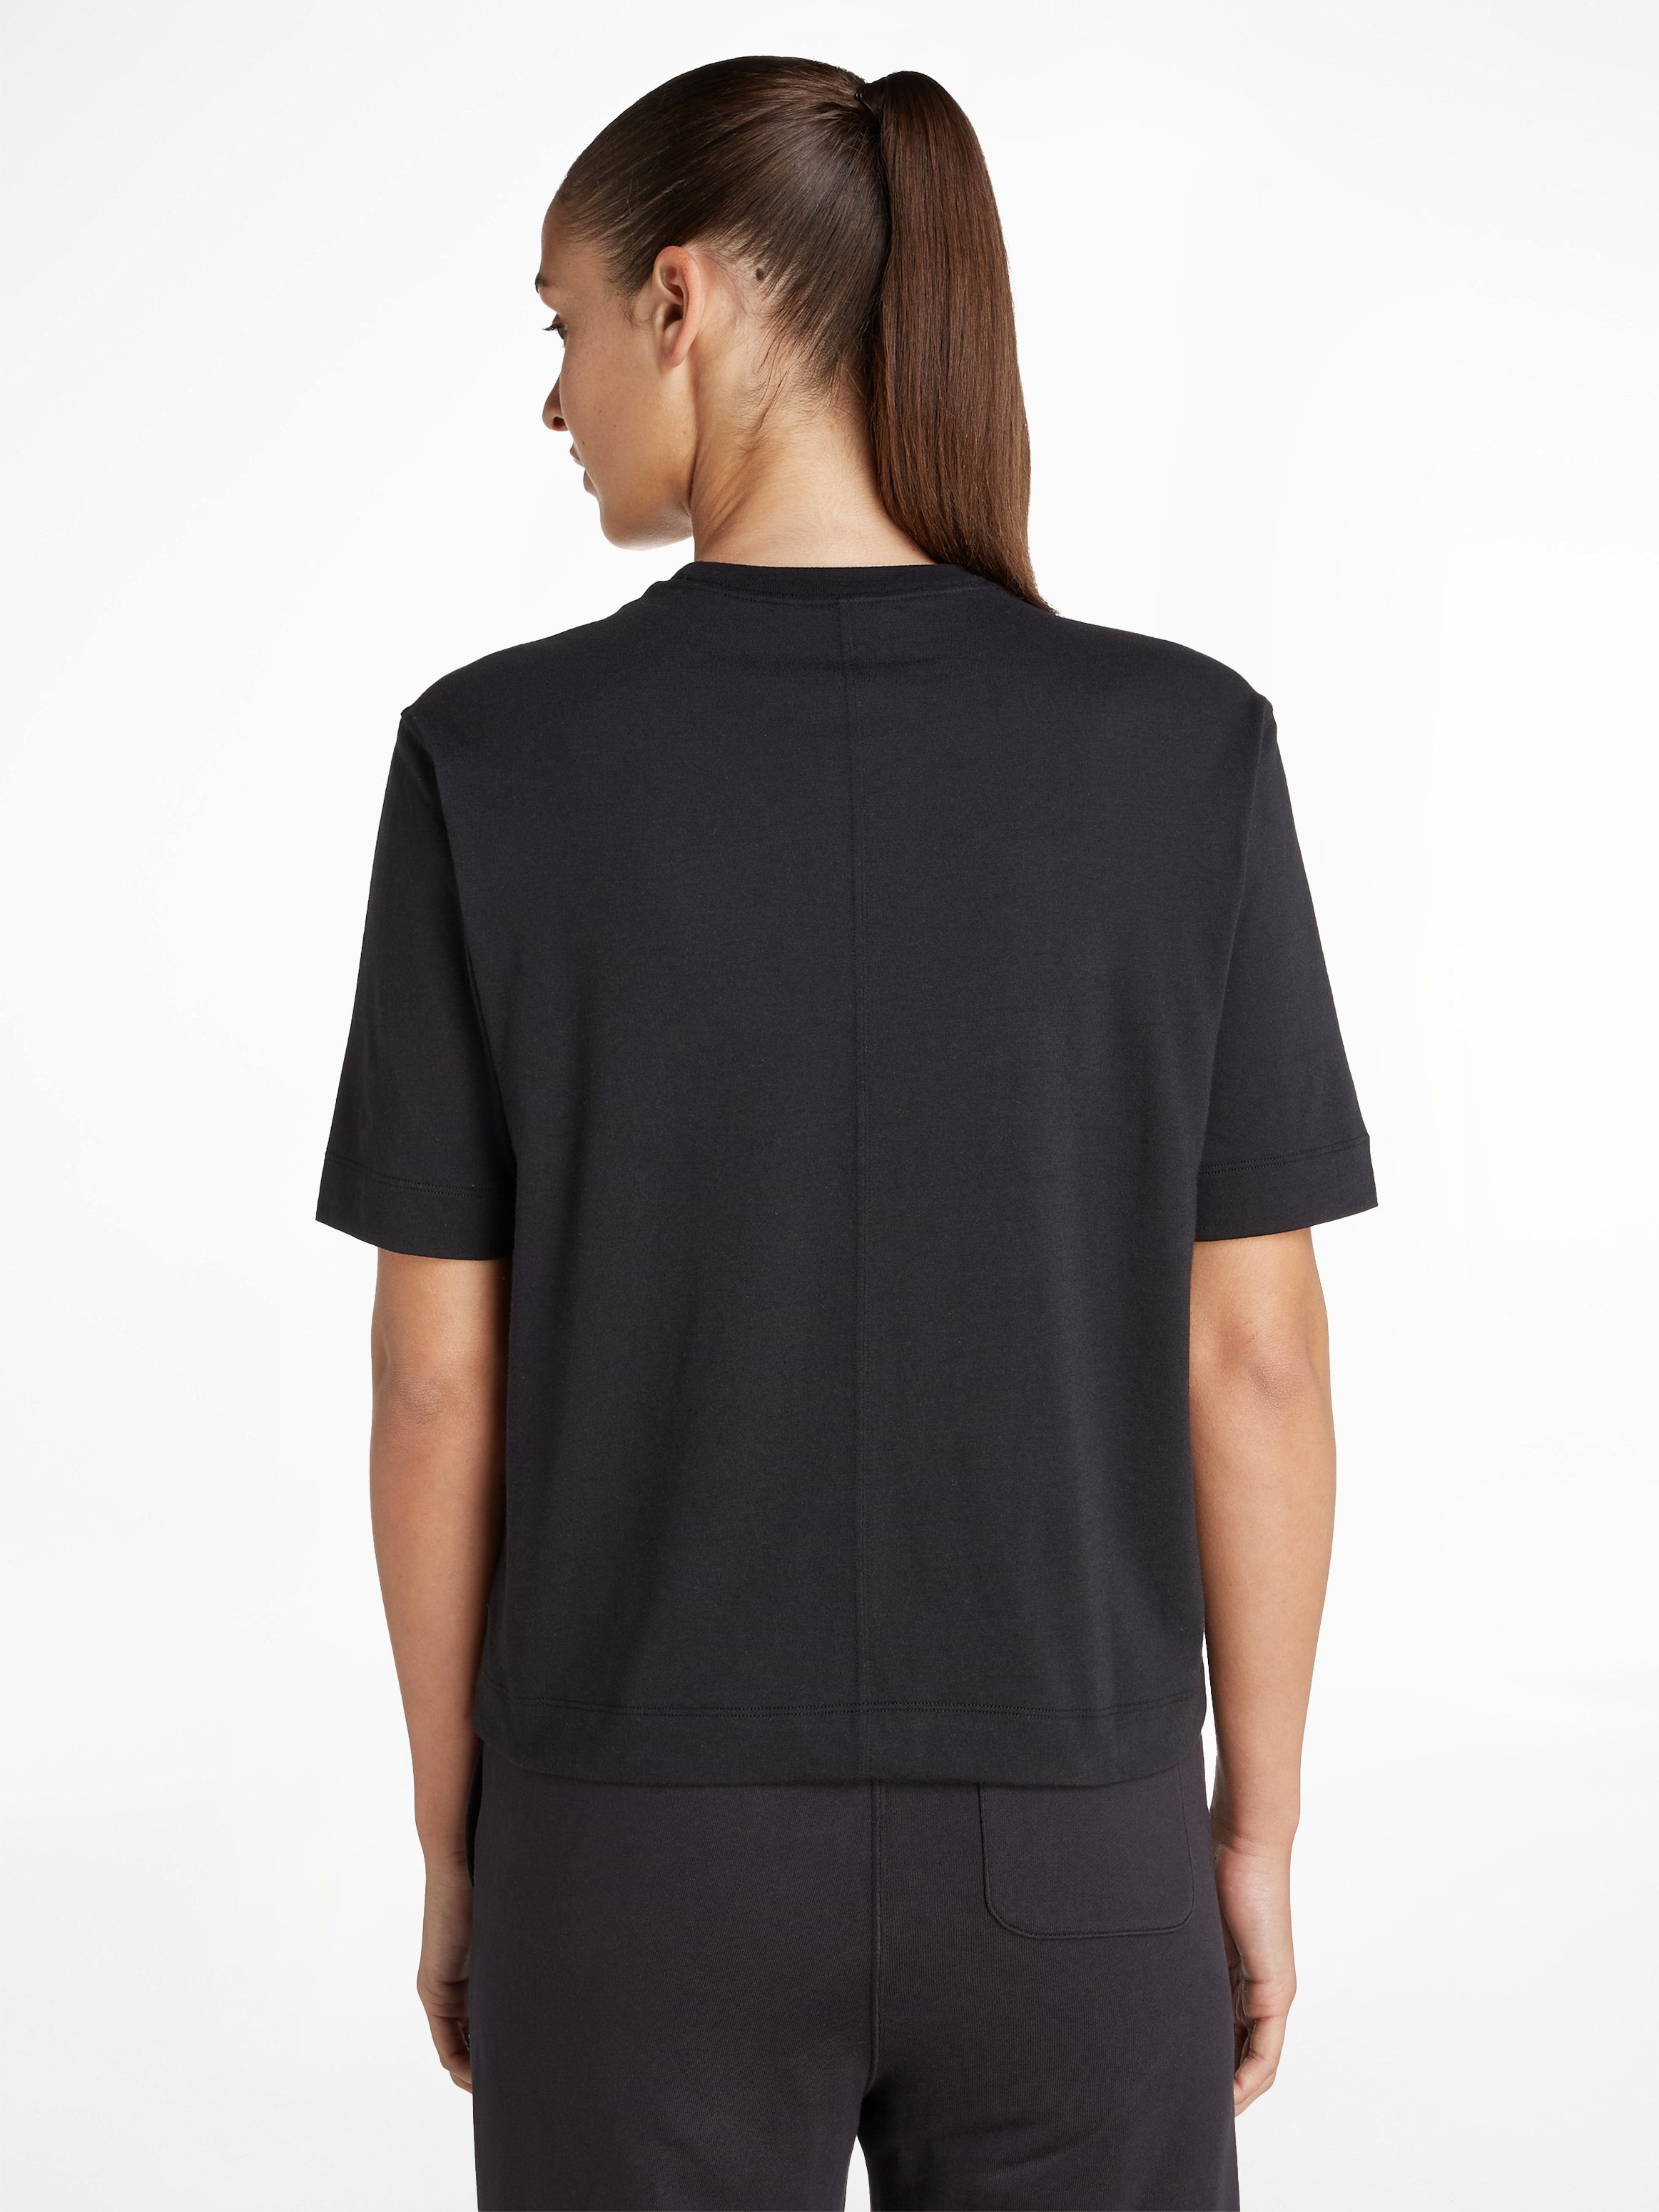 Calvin Klein Sport T-Shirt, Lockerer Schnitt mit überschnittenen Schultern